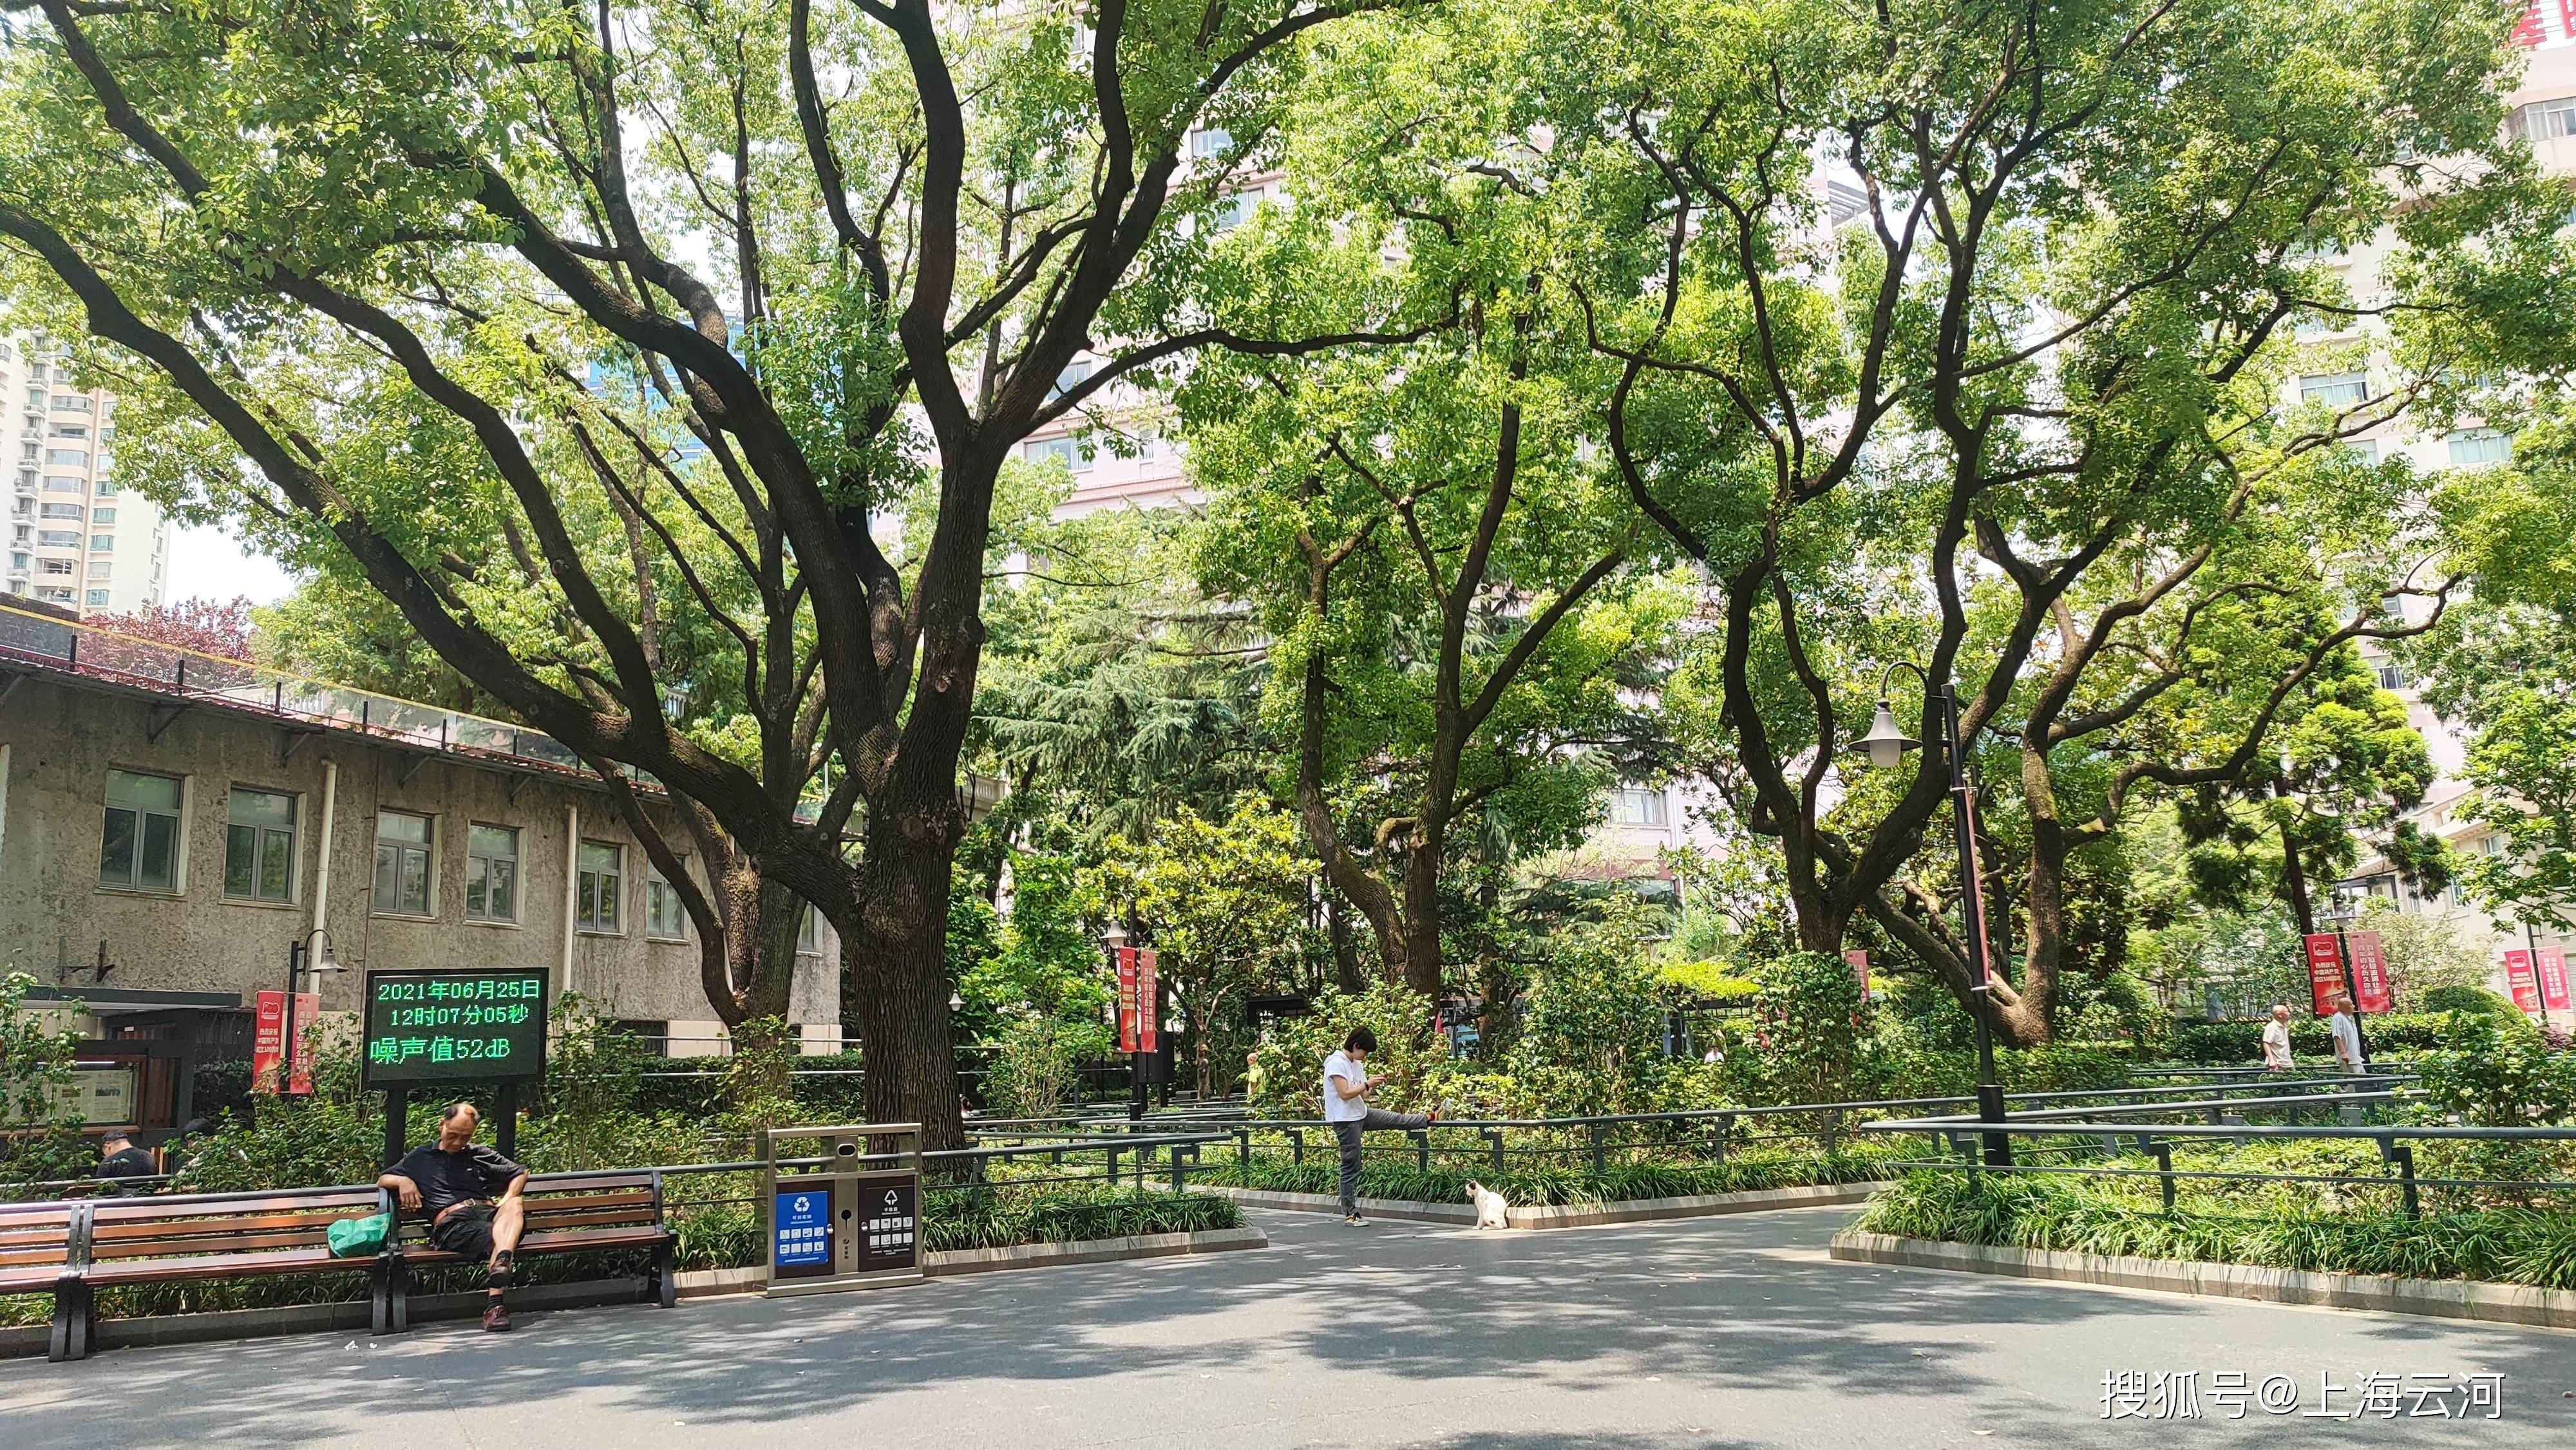 上海街景 梧桐树图片